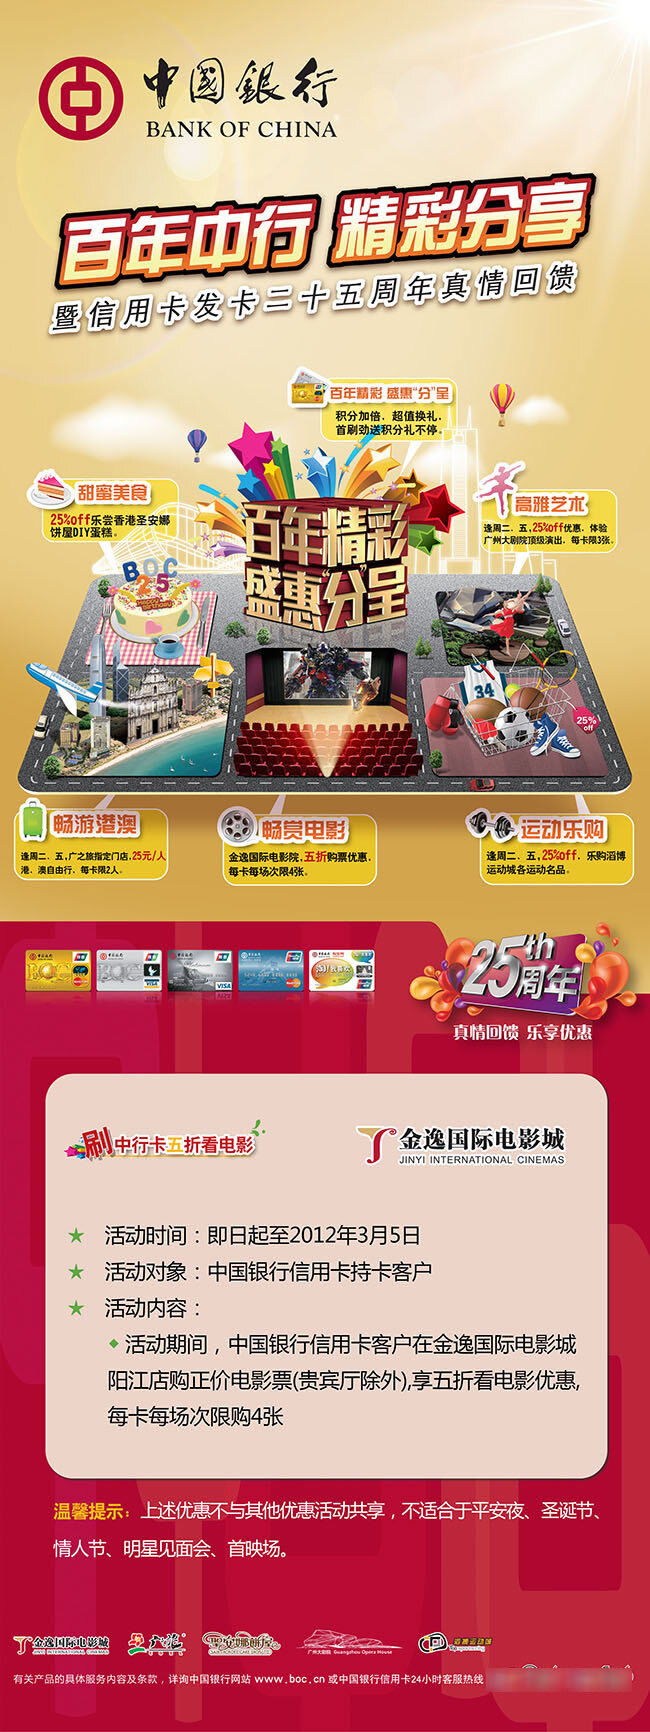 信用卡 周年 促销活动 x 展架 中国银行 宣传 免费 模板 x展架模板 红色